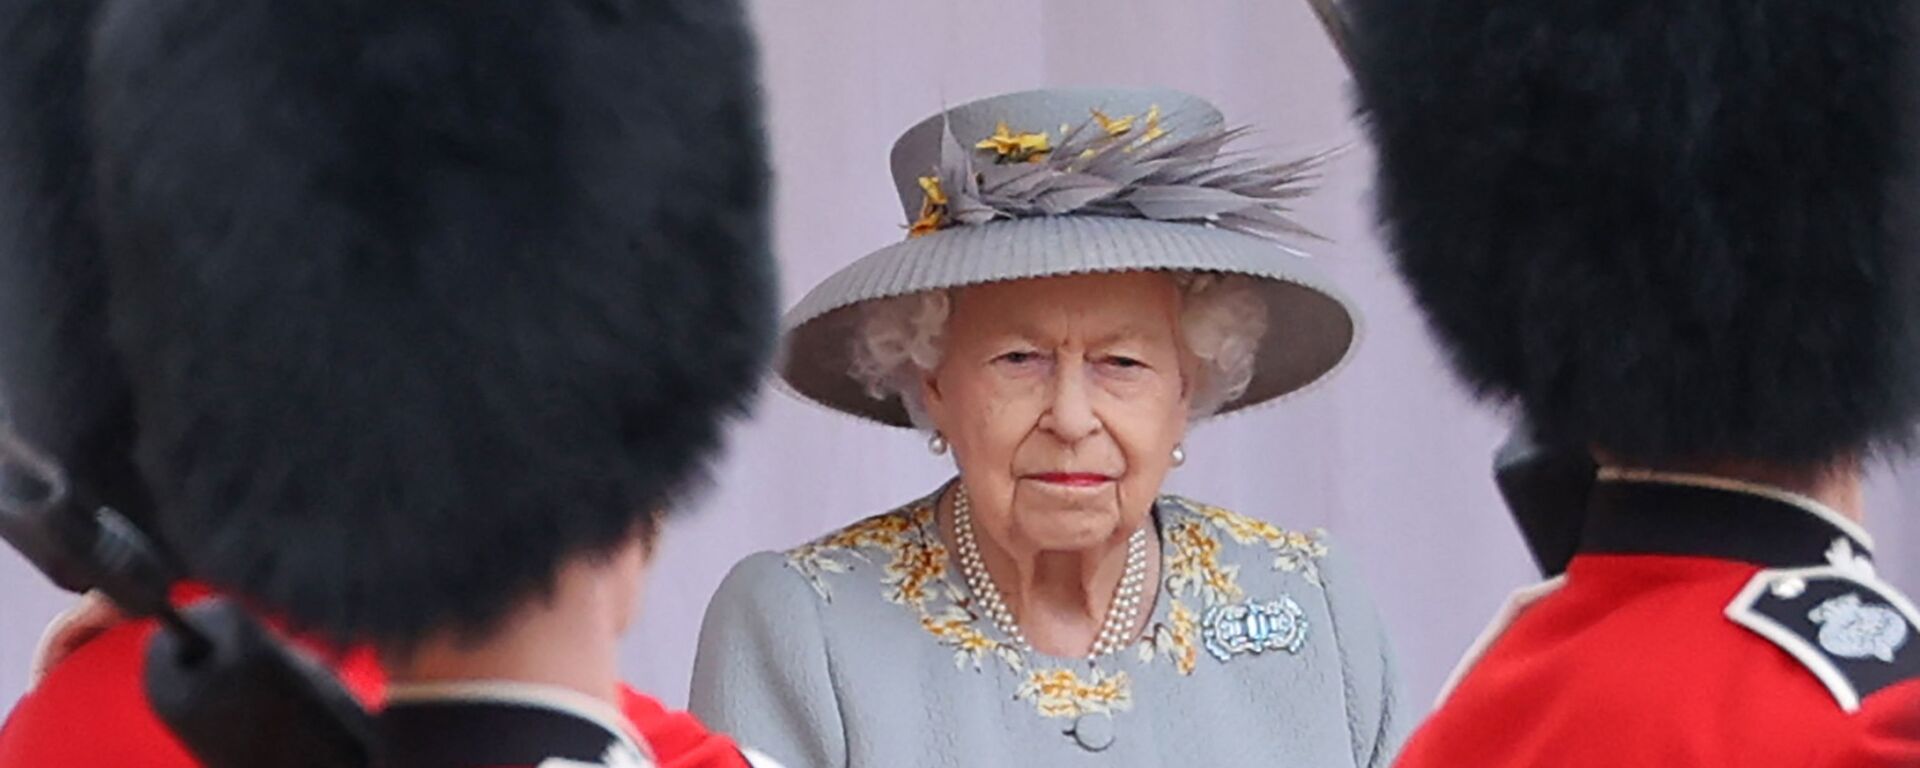 Nữ hoàng Anh Elizabeth II theo dõi một buổi lễ quân sự để đánh dấu sinh nhật chính thức của mình tại Lâu đài Windsor vào ngày 12 tháng 6 năm 2021 ở Windsor. - Sputnik Việt Nam, 1920, 06.02.2022